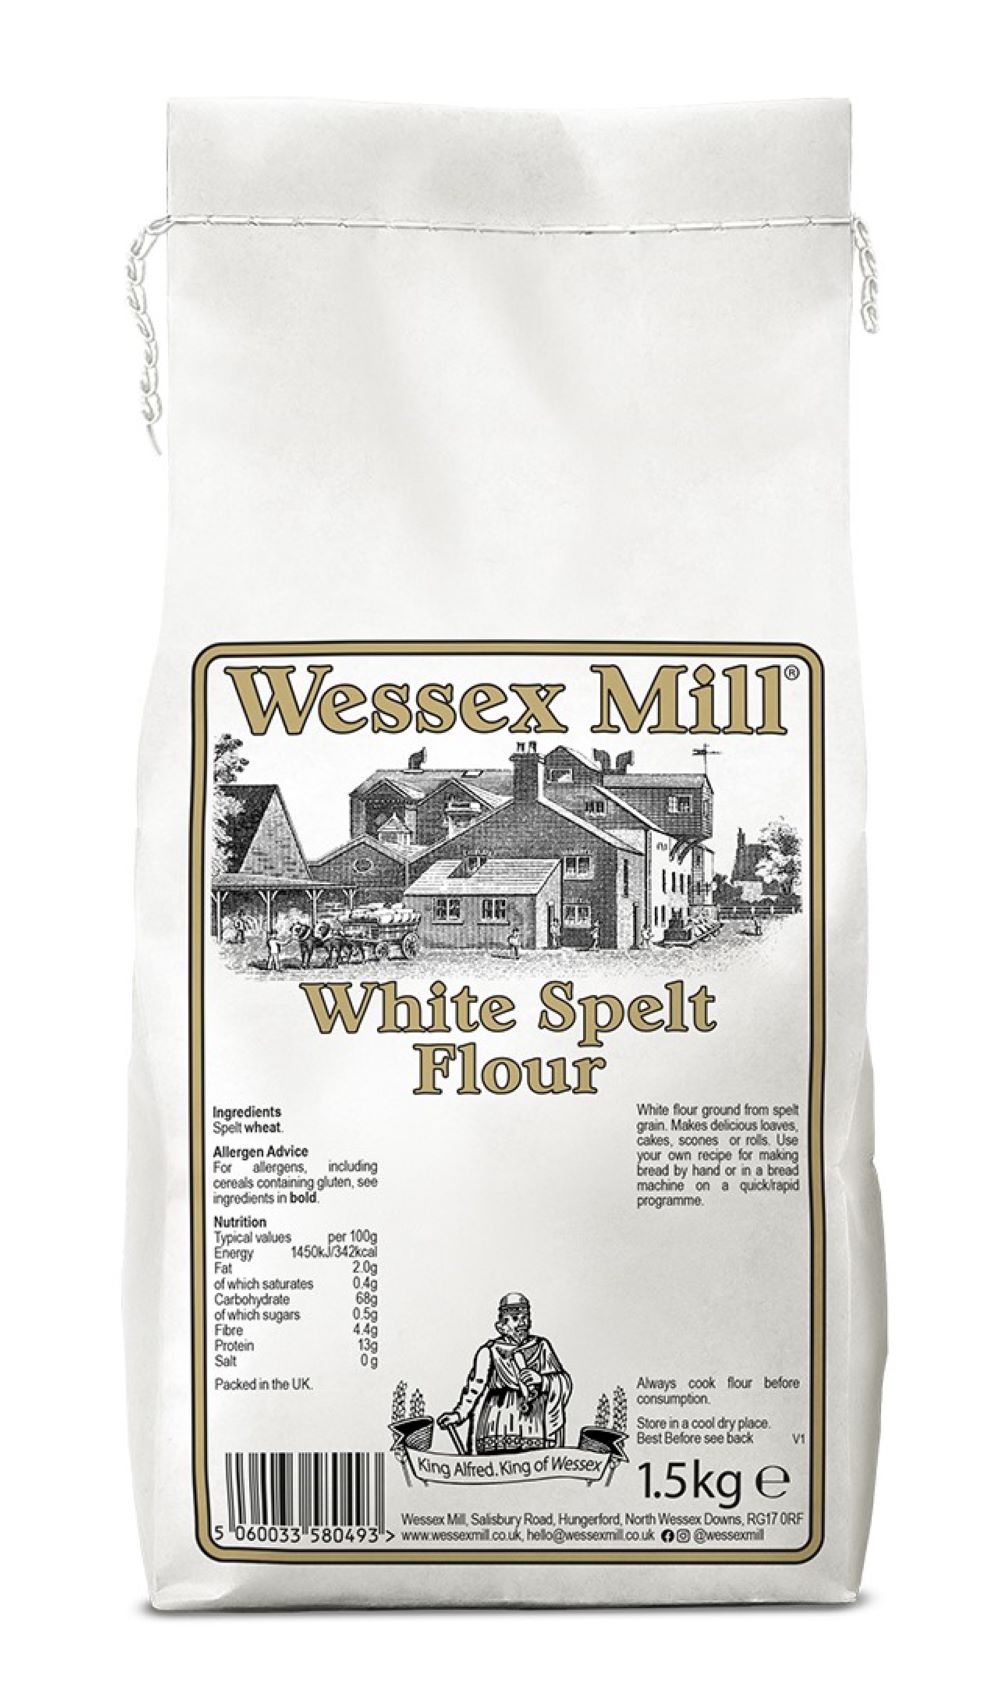 White Spelt Flour